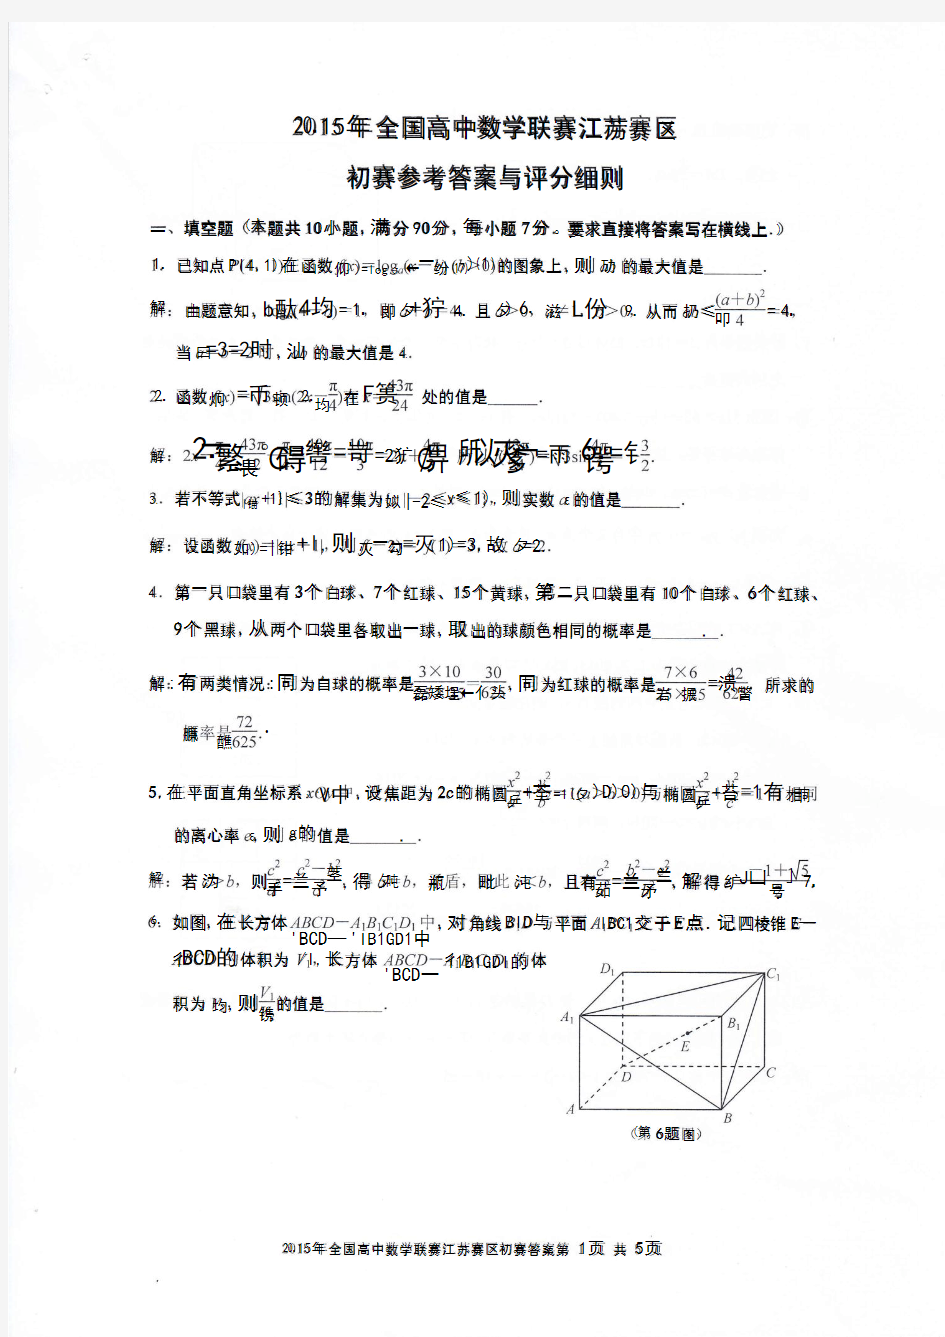 2015年全国高中数学联赛江苏赛区初赛参考答案与评分细则 (1)